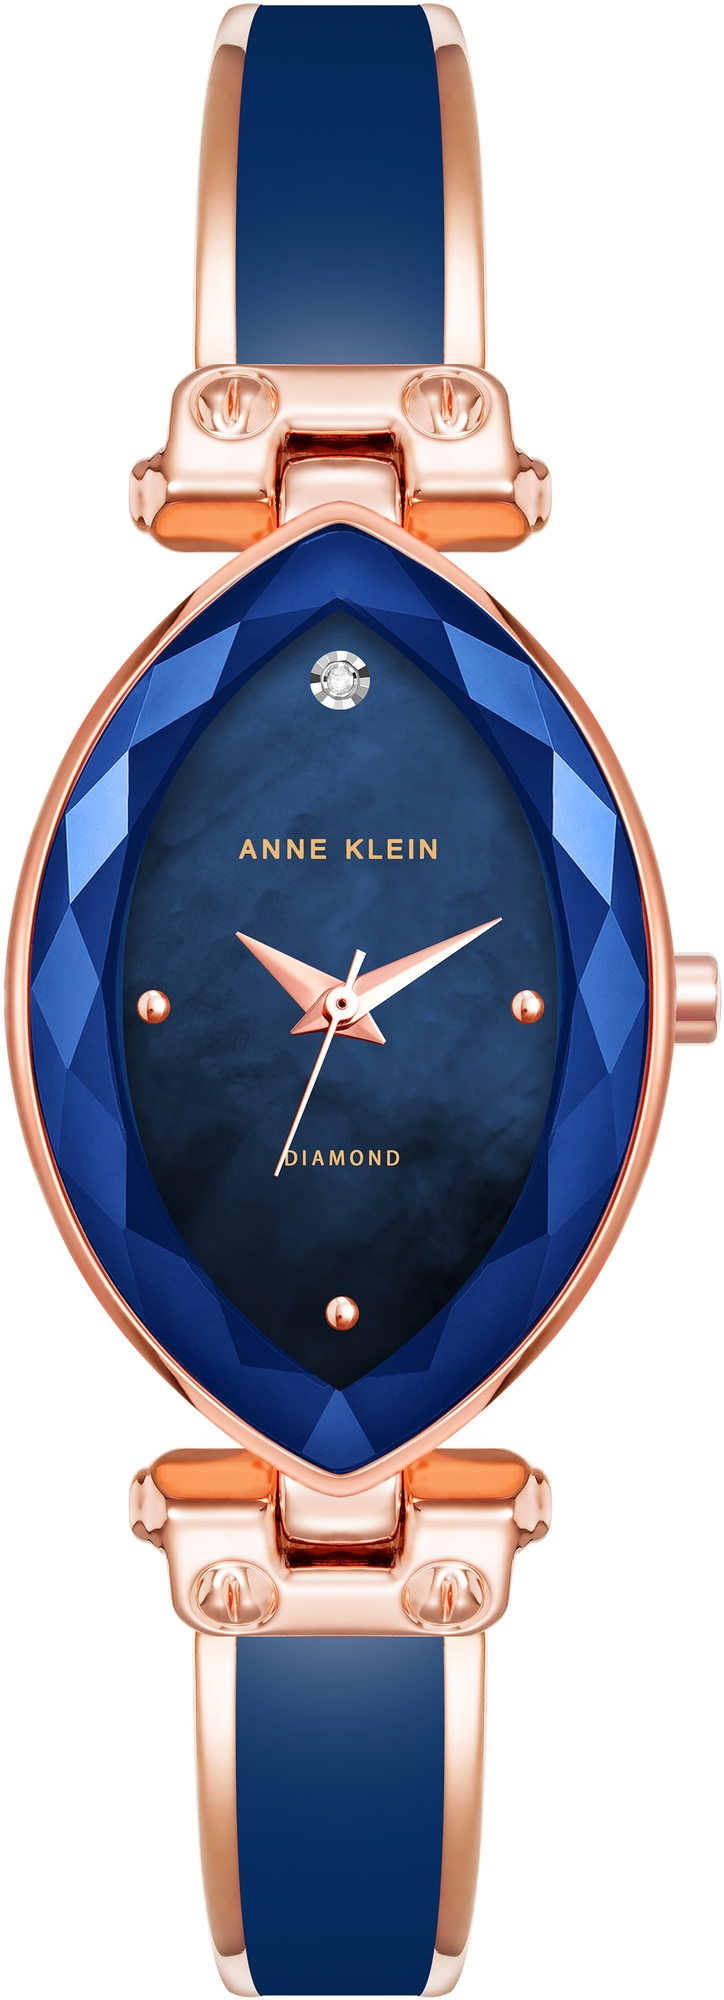 Наручные часы Anne Klein 4018NVRG наручные часы anne klein 2974lpgb